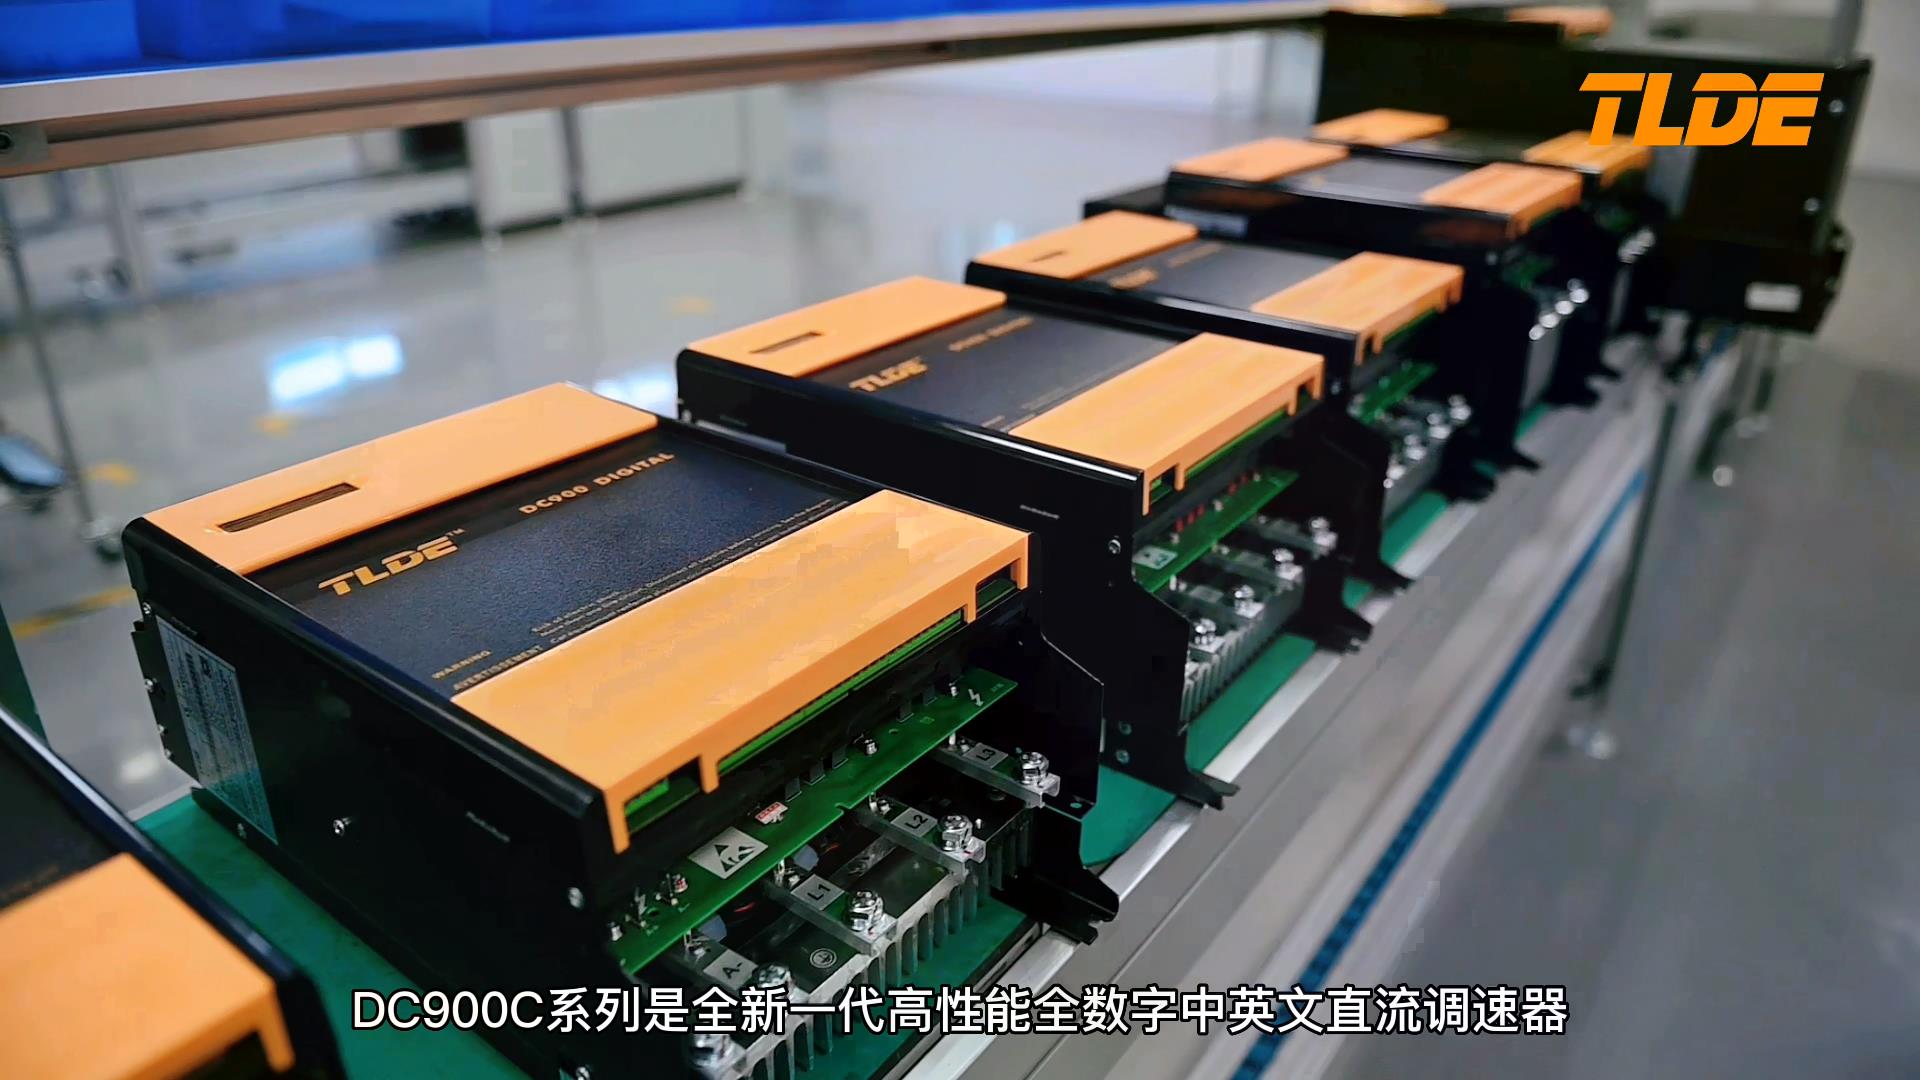 DC900C系列中文直流调速器产品展示介绍！国产优质直流调速器推荐！